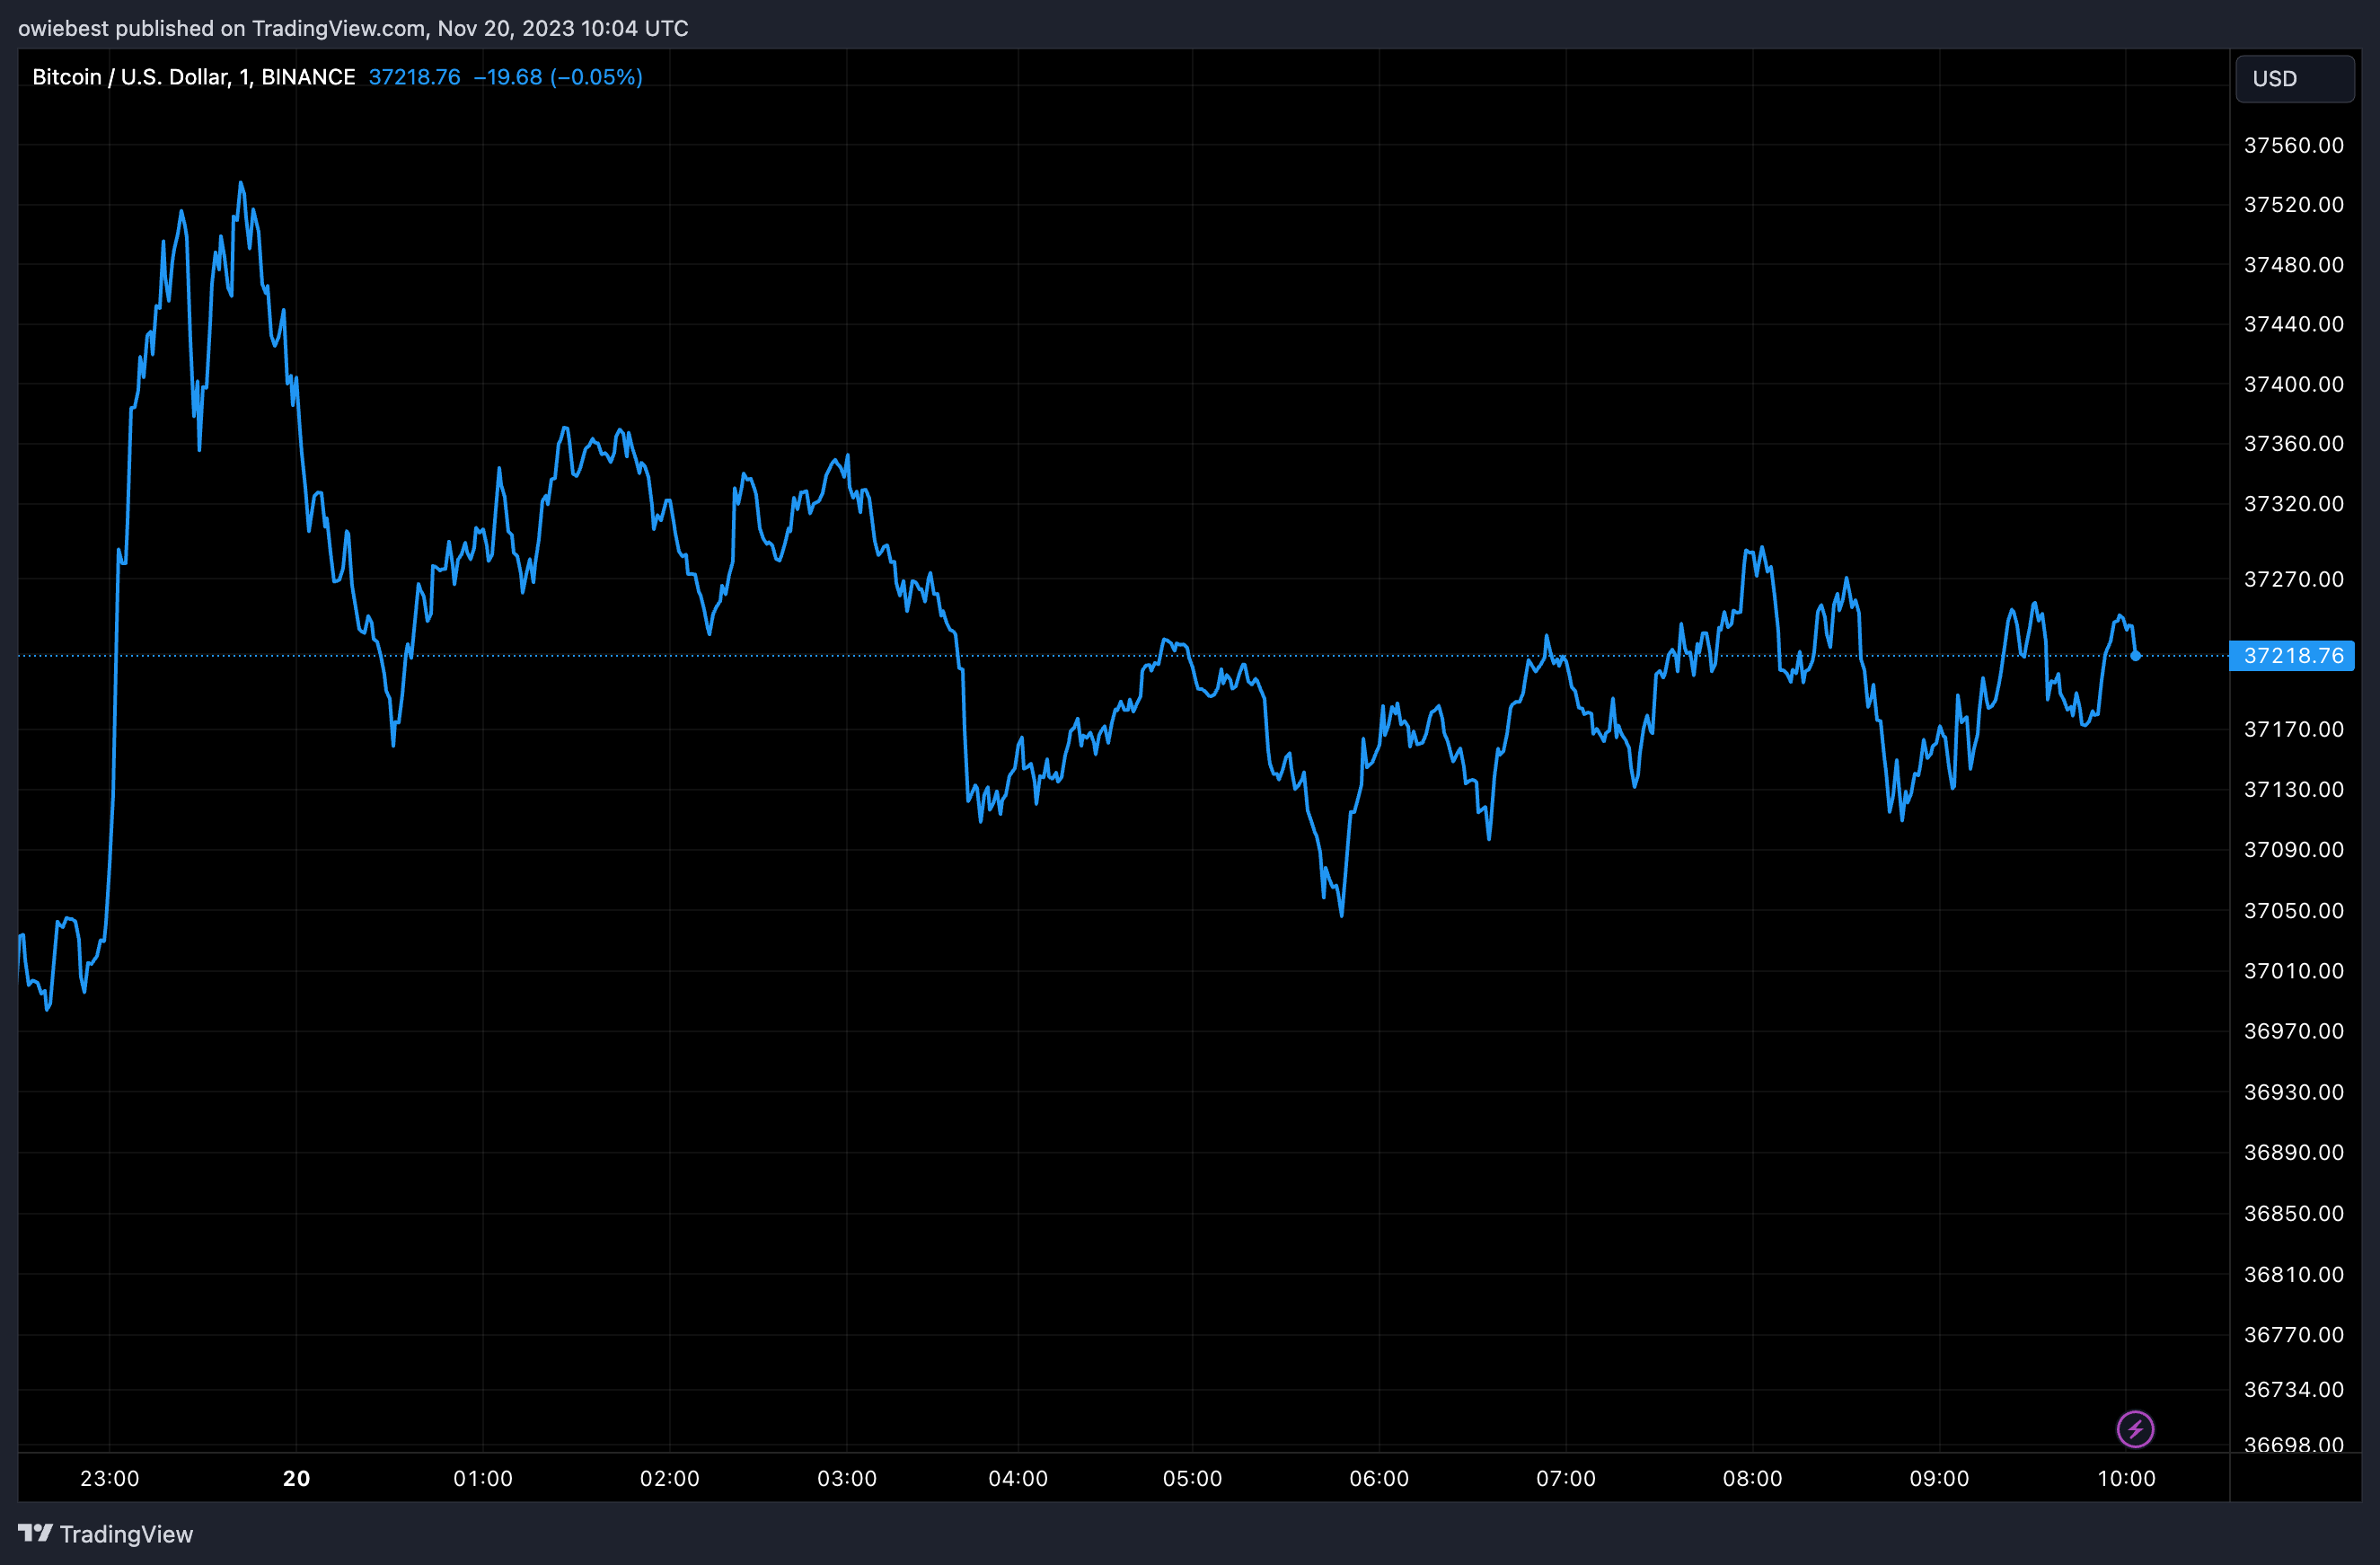 График цен на биткоин от Tradingview.com (Аргентина)